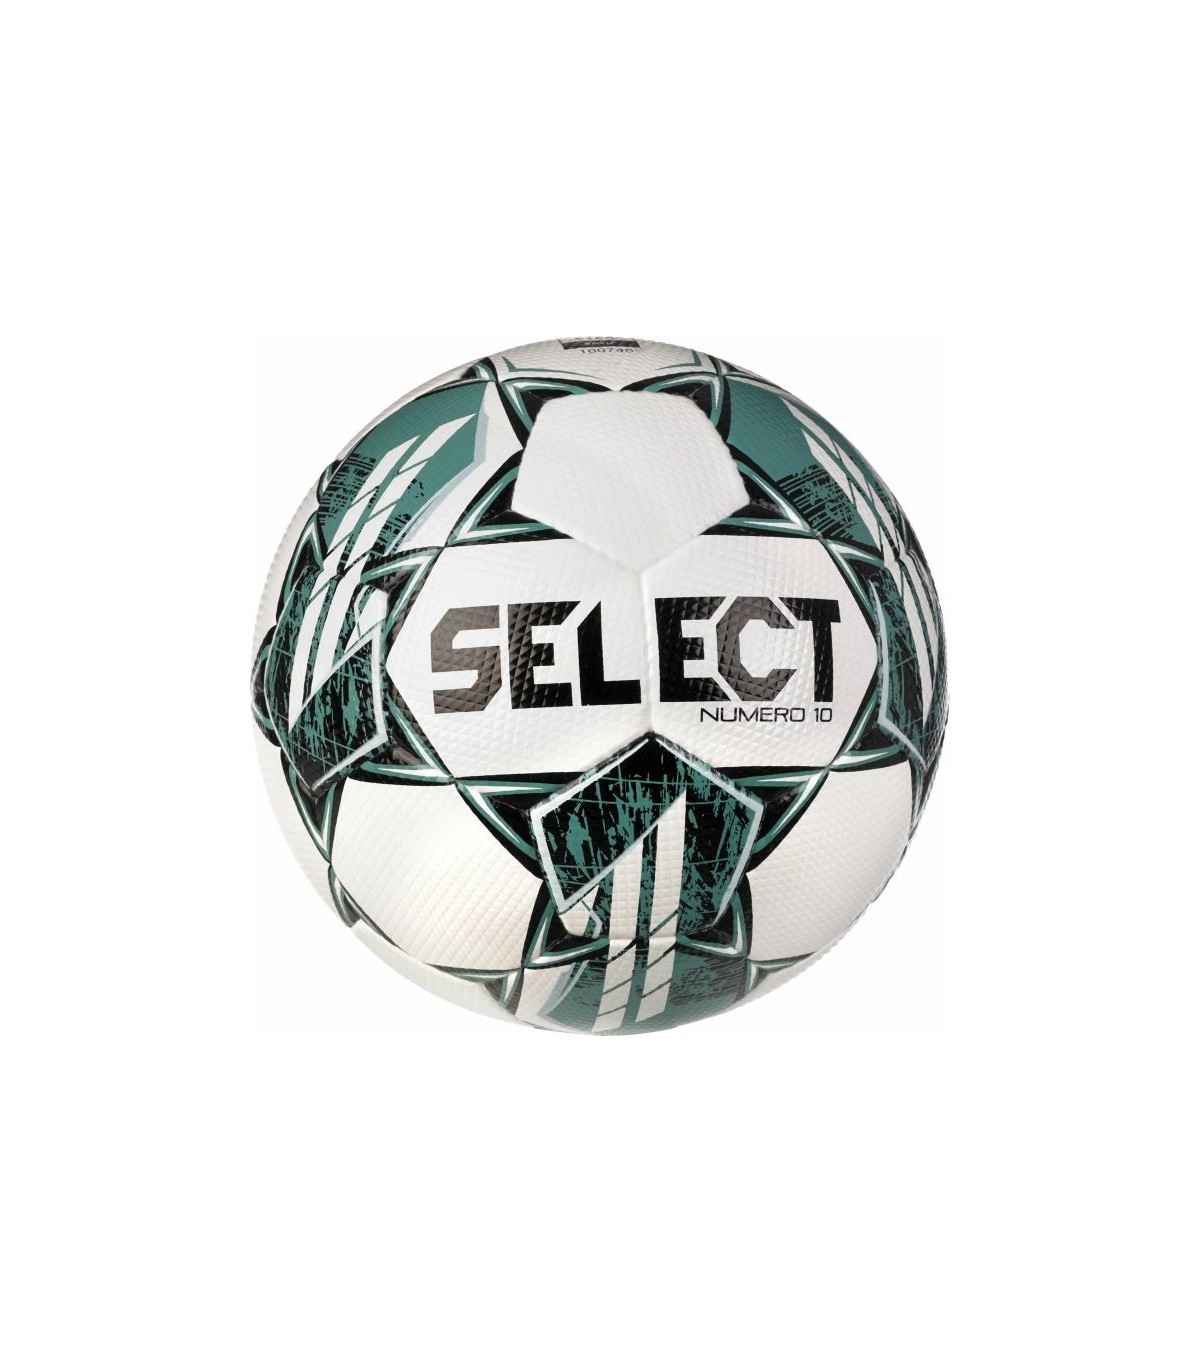 Ballon de football Select Numero 10 Numéro 10